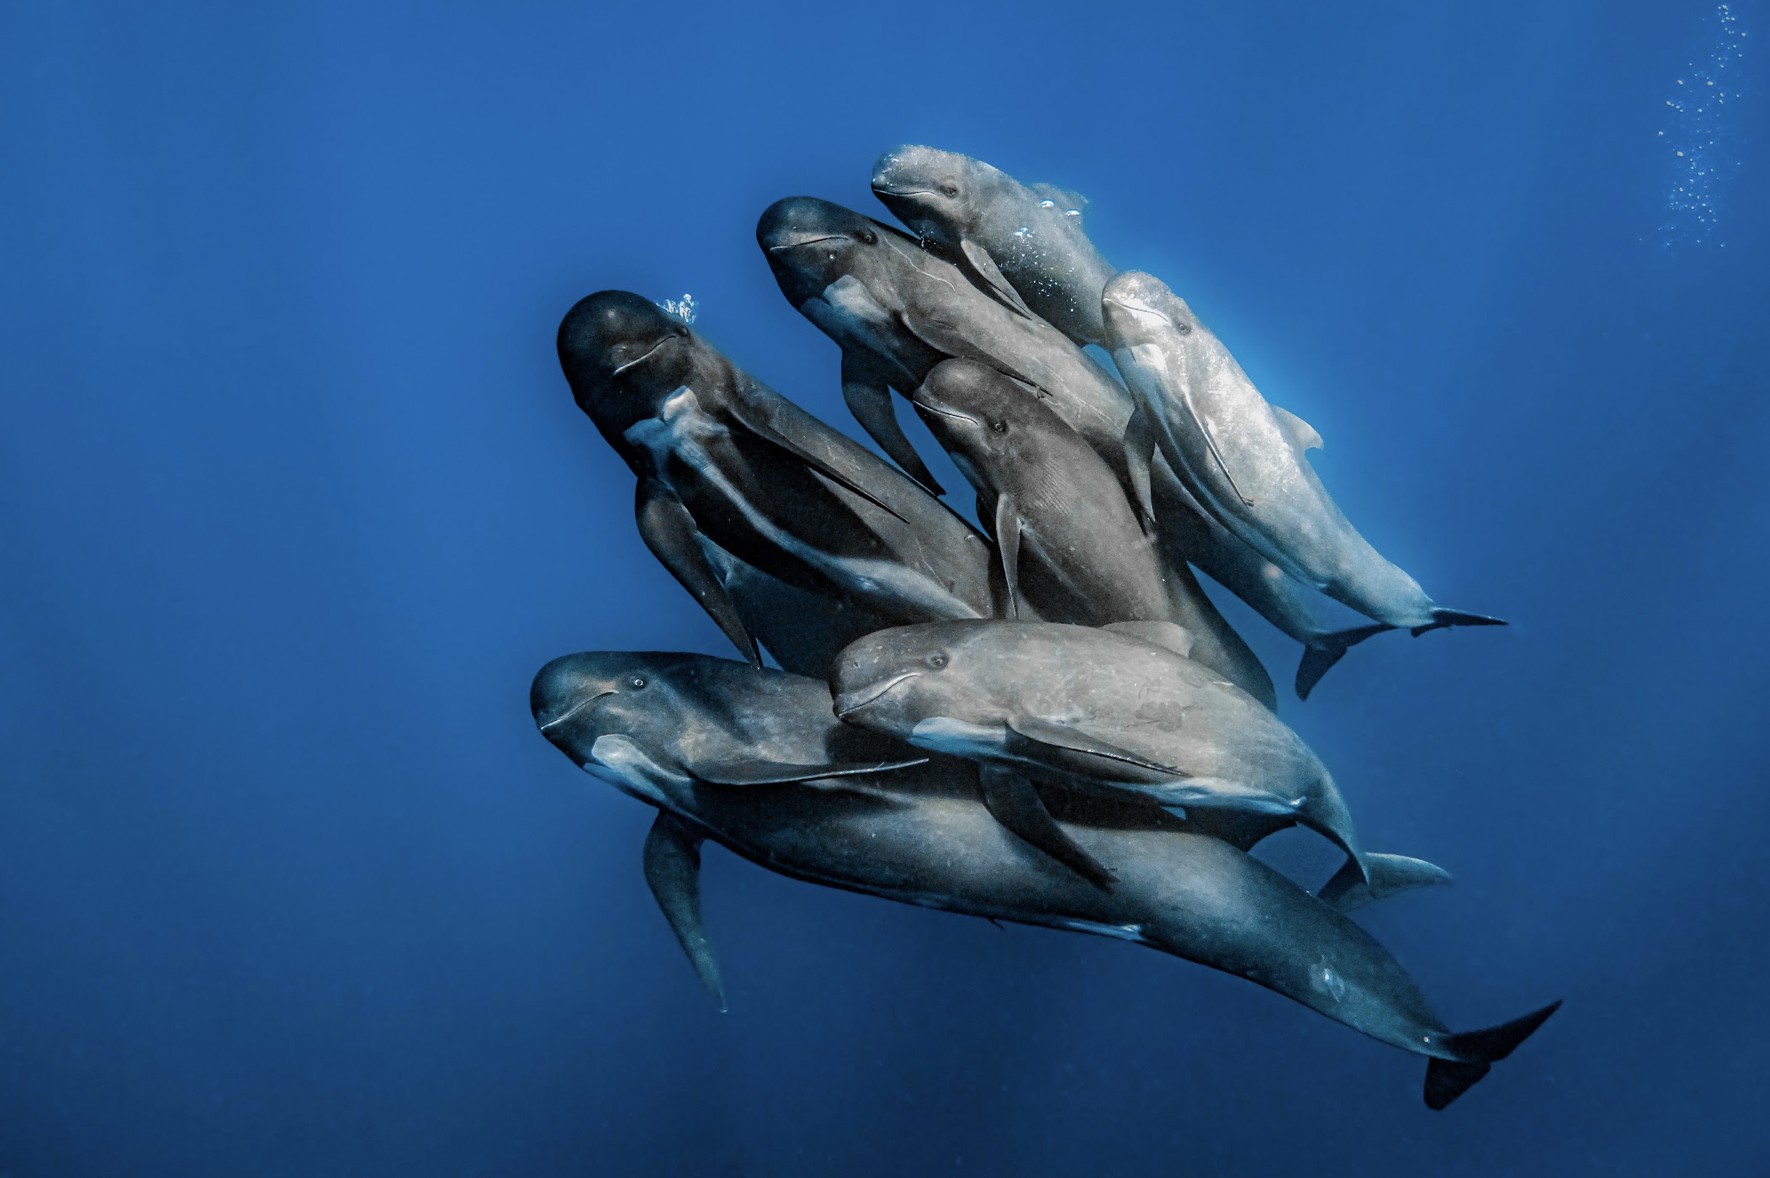 O fotografo conseguiu capturar o momento perfeito em que grupo de baleias-piloto se juntava (Foto: Rafael Fernandez Caballero)